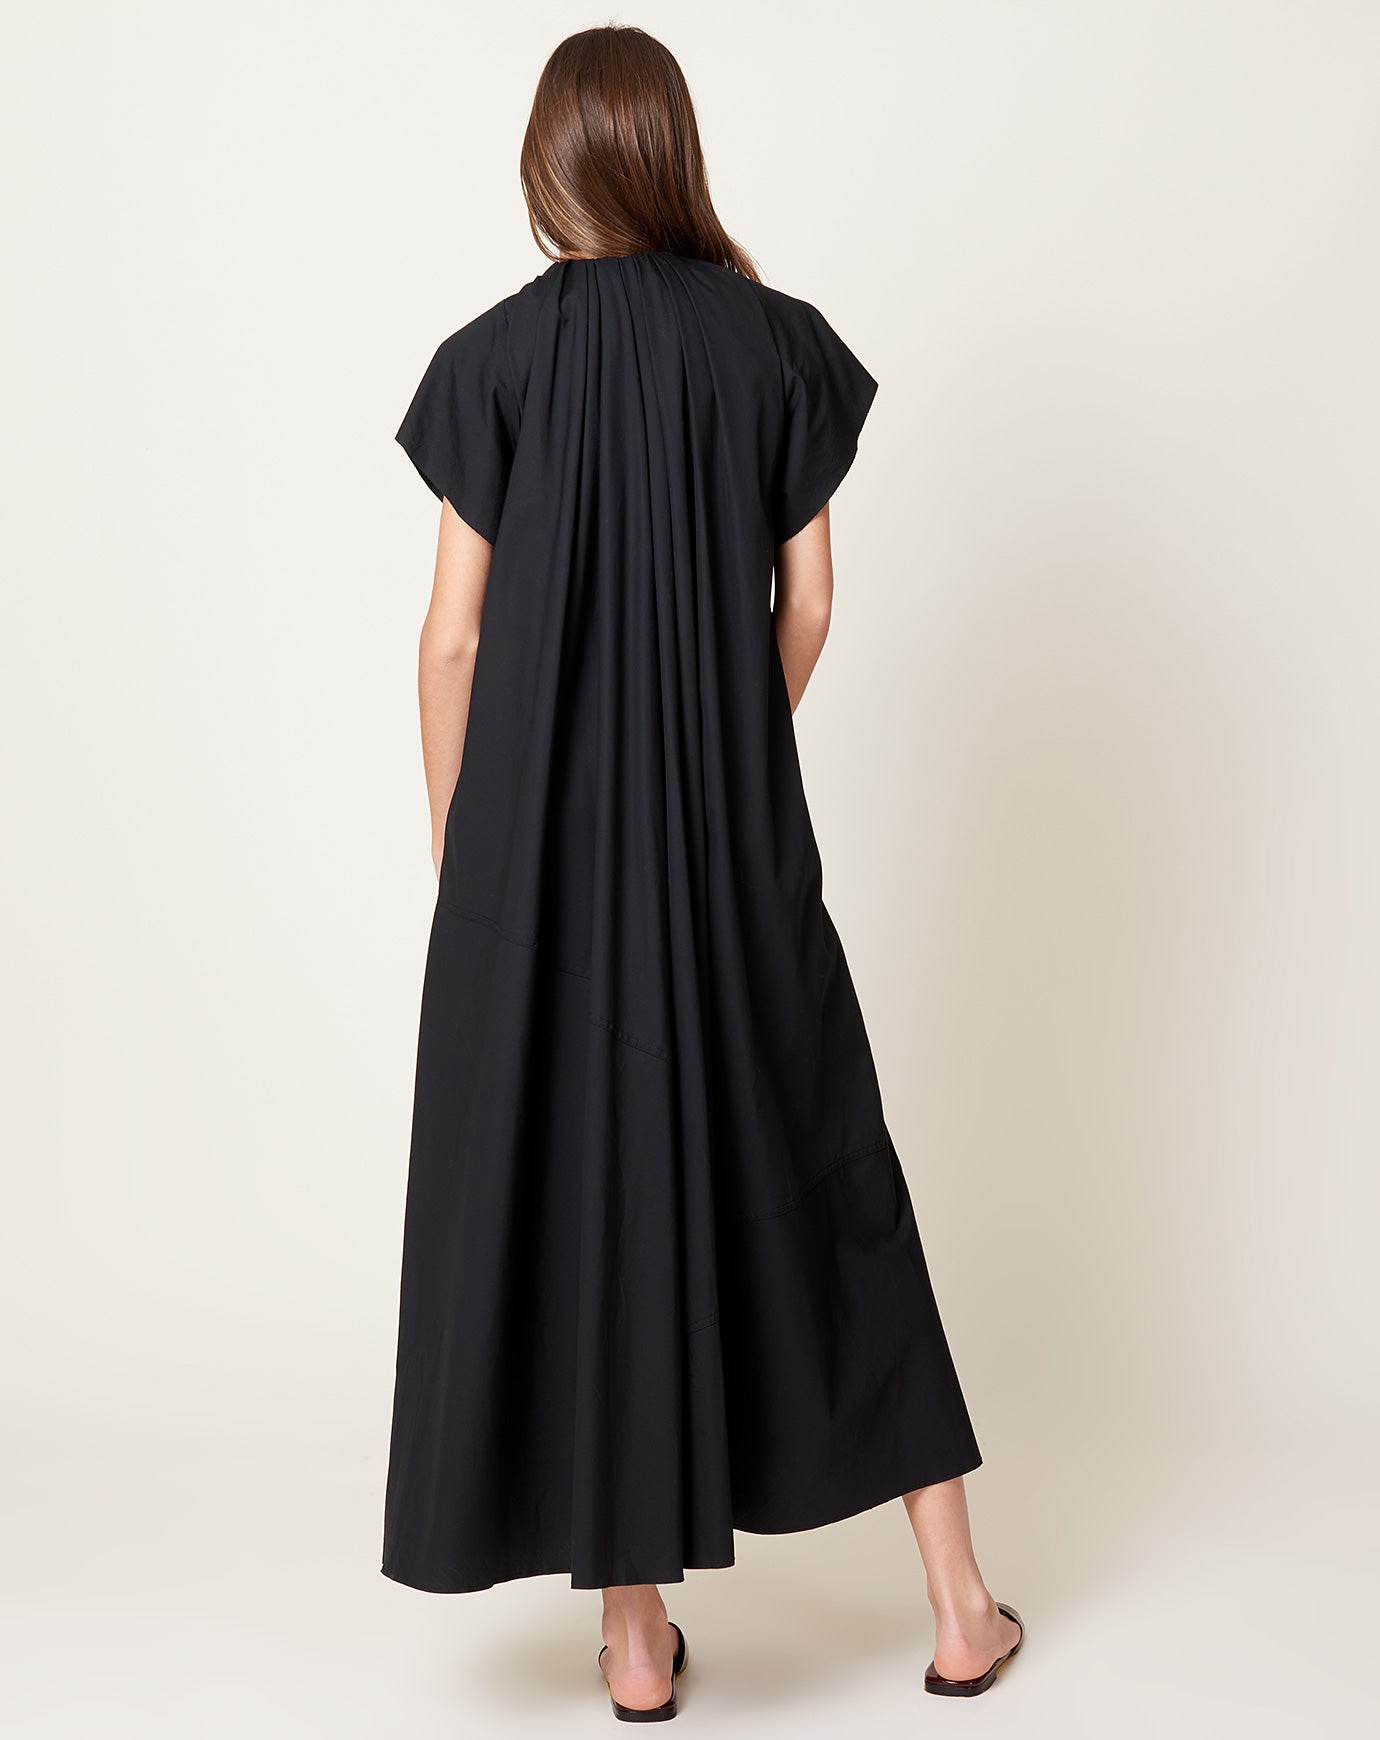 MM6 Pleat Dress in Black